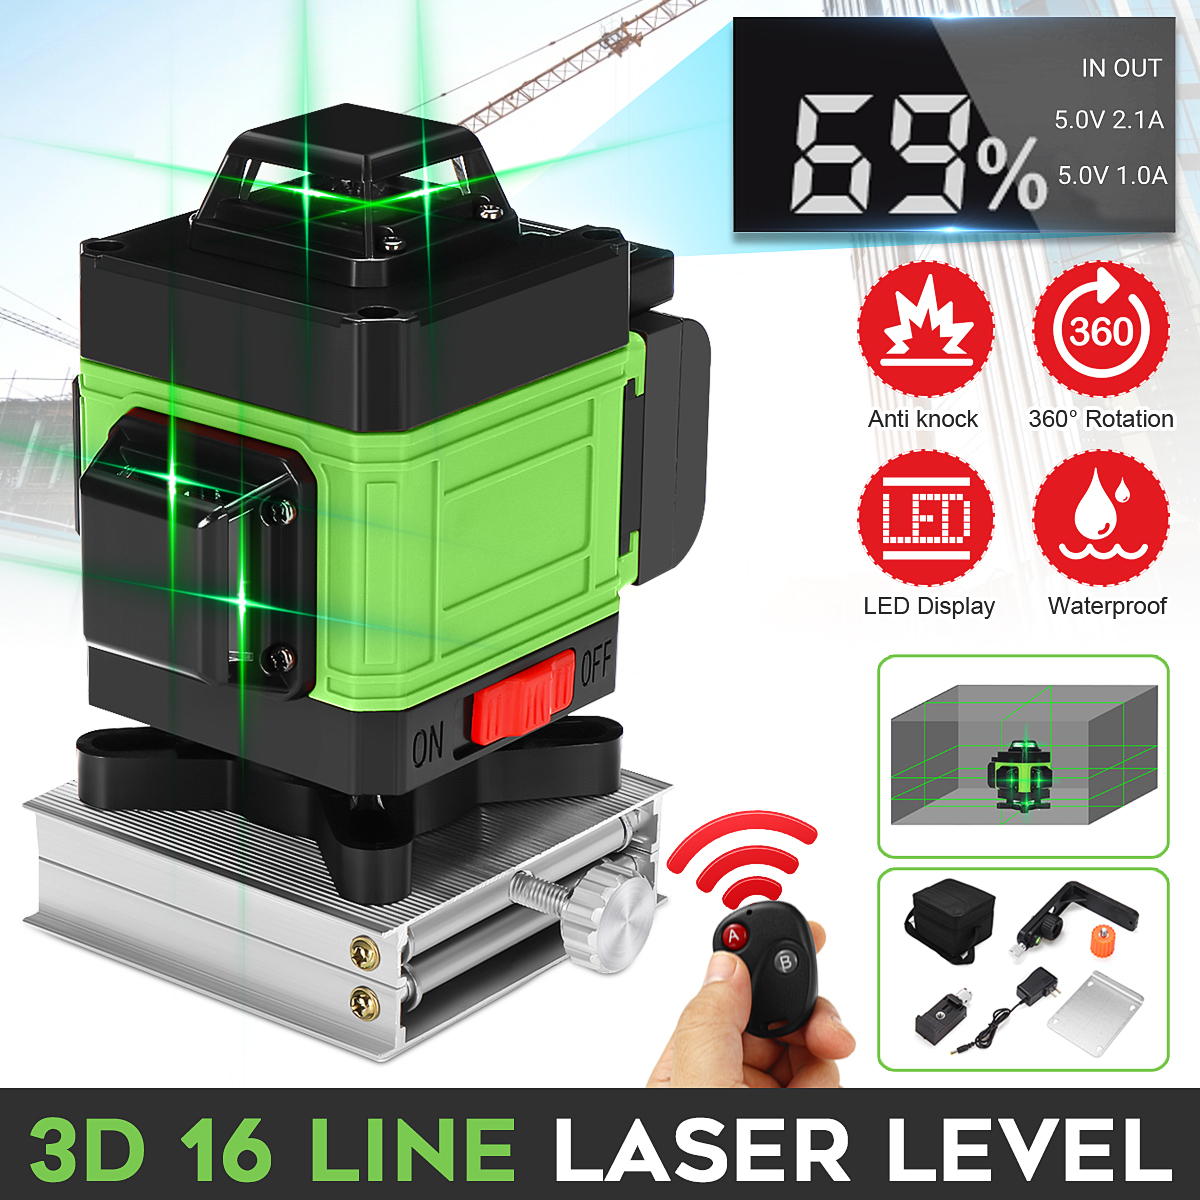 LED-Display-3D-360deg-16-Line-Green-Light-Laser-Level-Cross-Self-Leveling-Measure-Tool-1700669-1